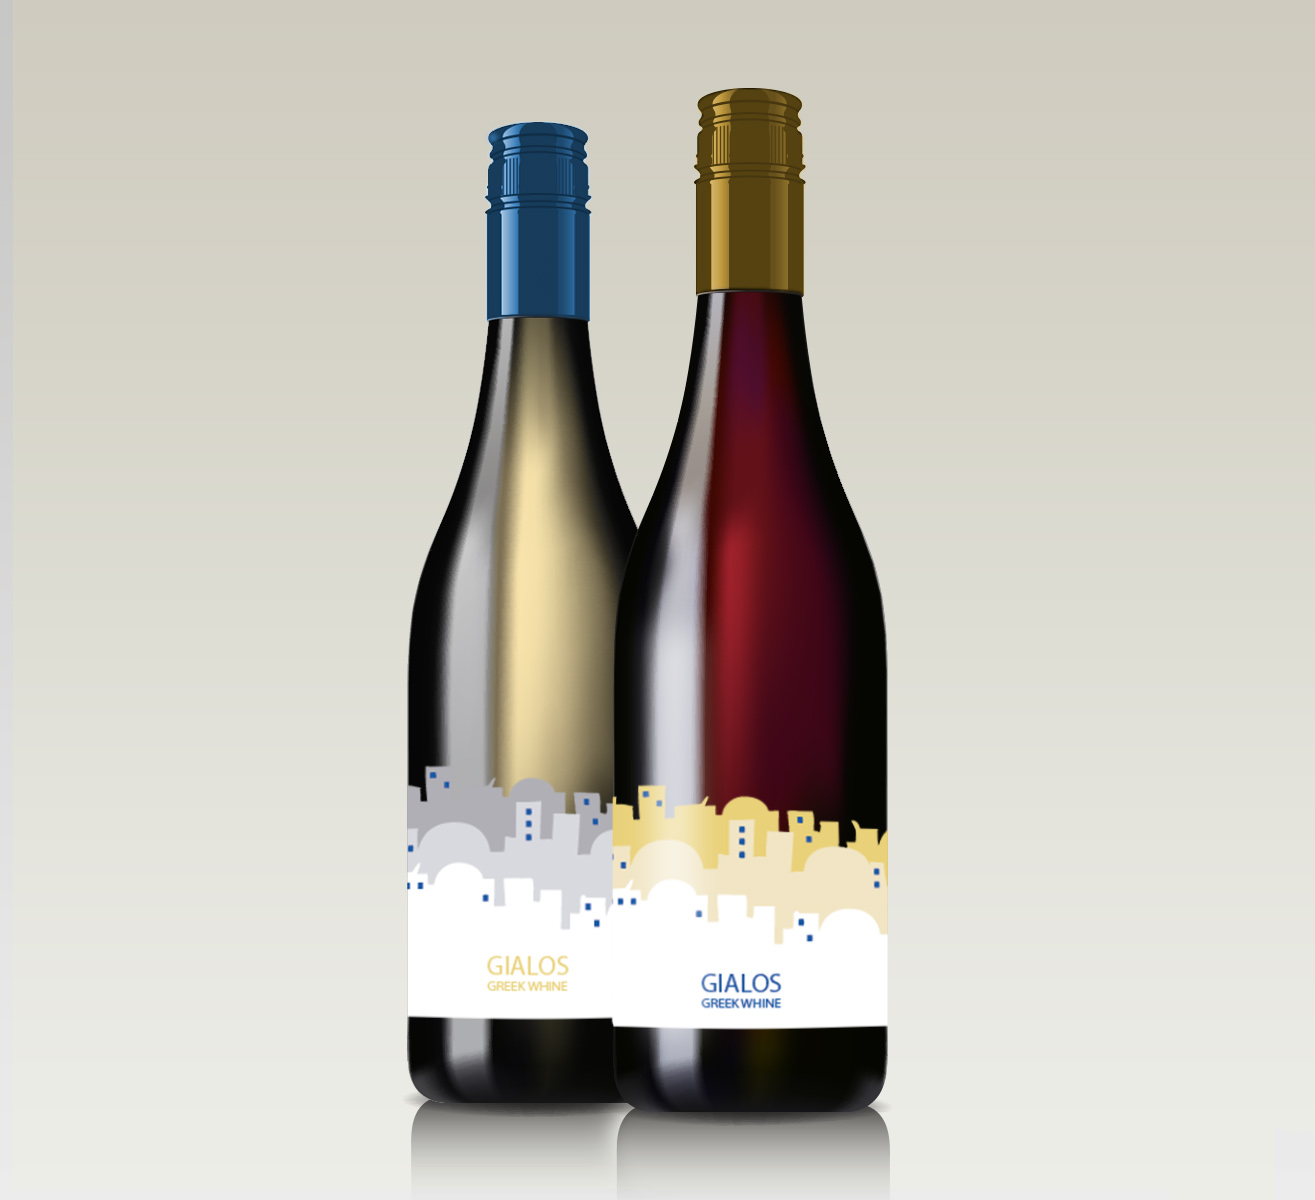 greek wine bottle3.jpg